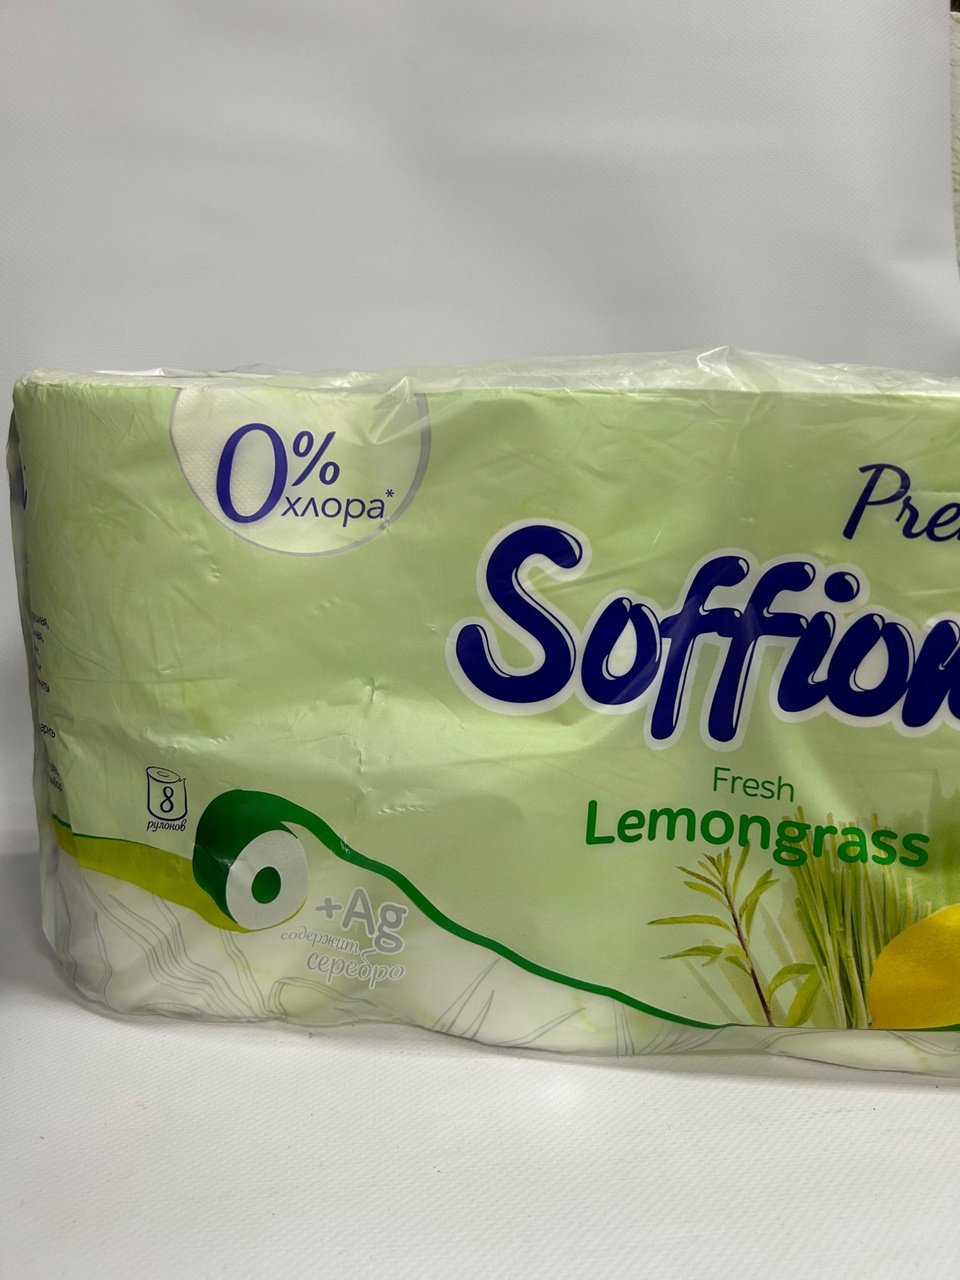 Туалетная бумага Soffione «Лемонграсс» 8шт - 200 ₽, заказать онлайн.